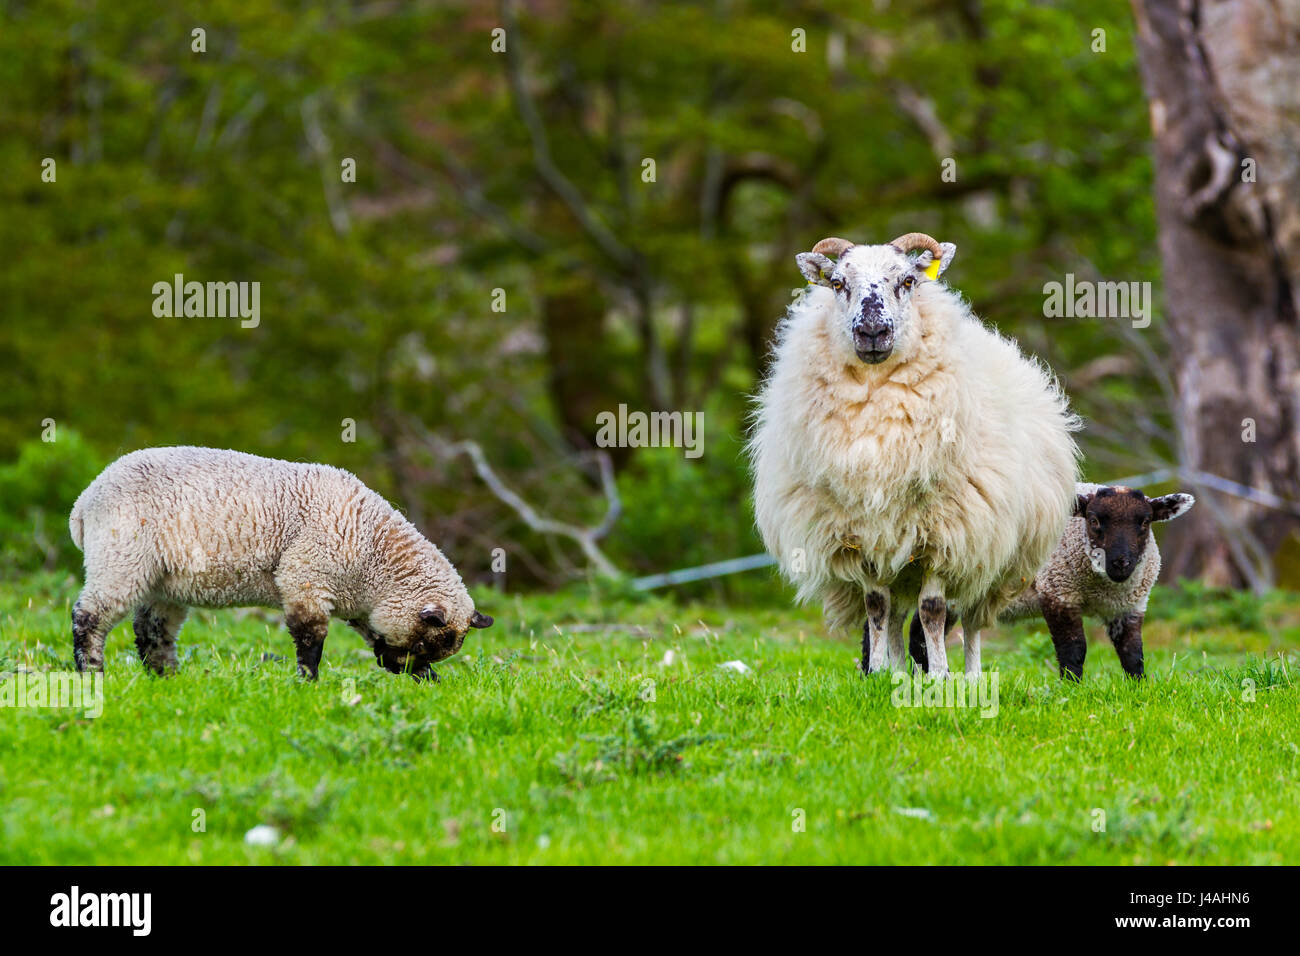 sheep and lamb Stock Photo